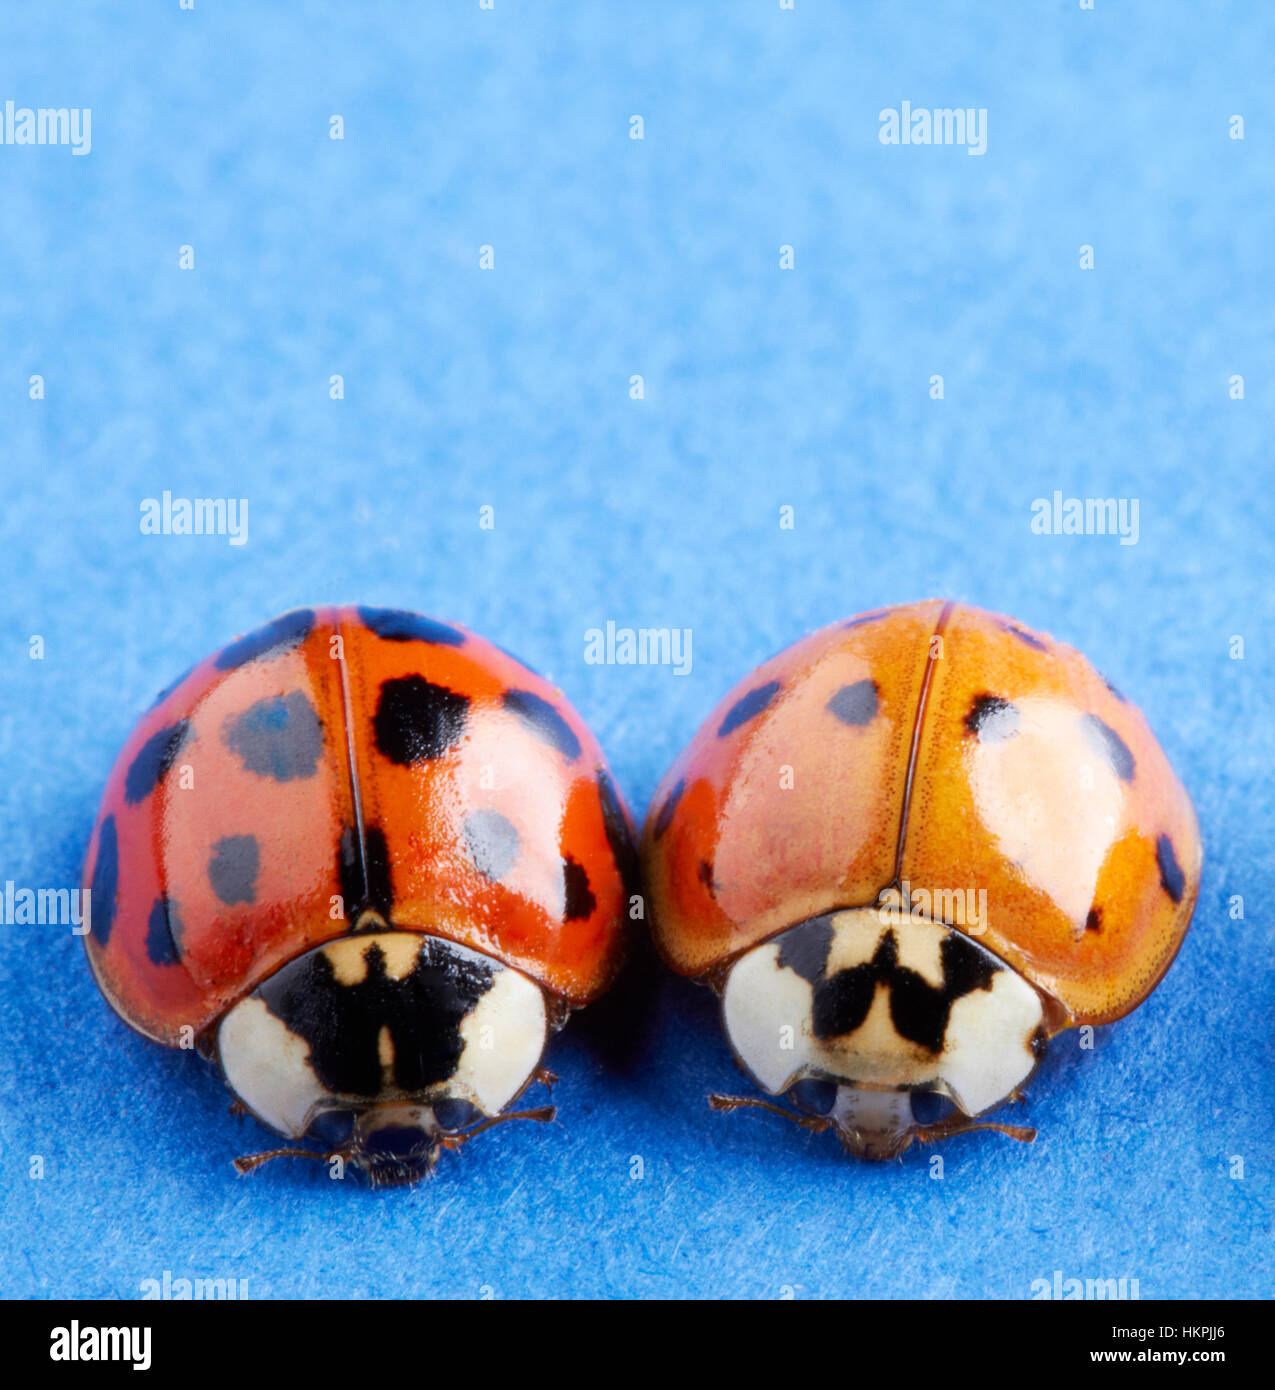 Una macro immagine di due spotted coccinella coccinella o insetti, uno rosso e uno arancione su un blu contrastante la superficie della carta. Foto Stock